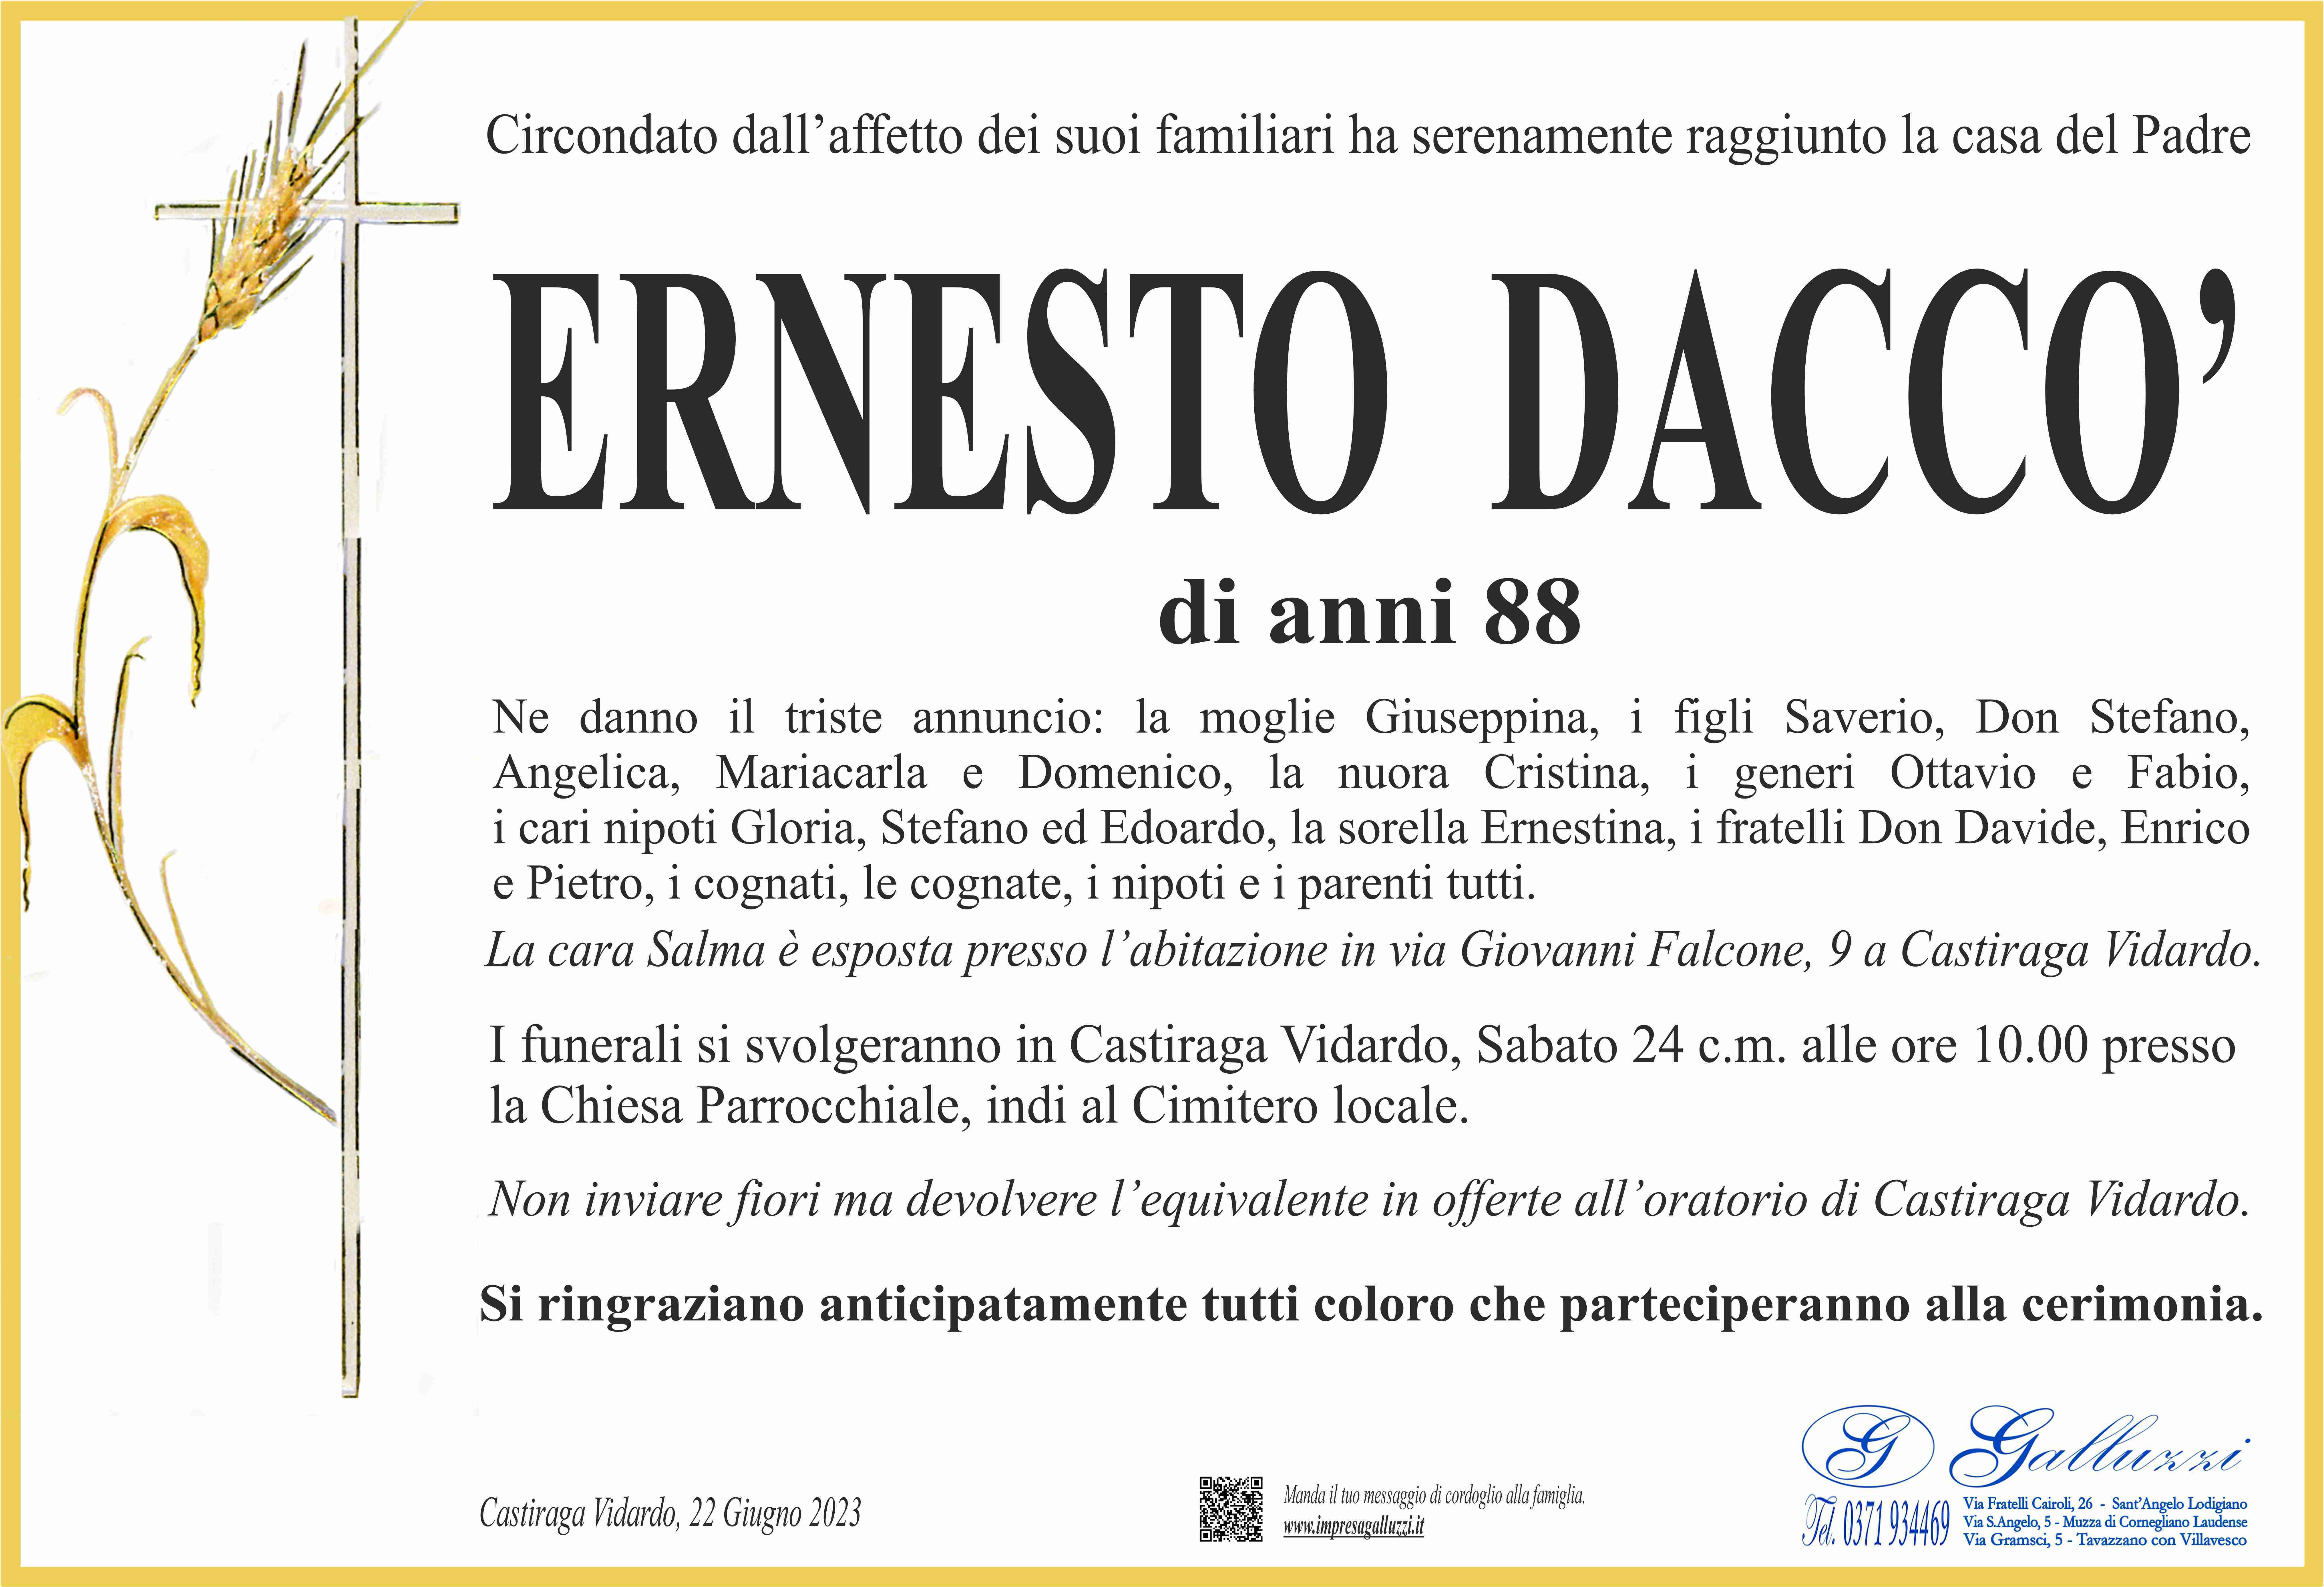 Ernesto Dacco'